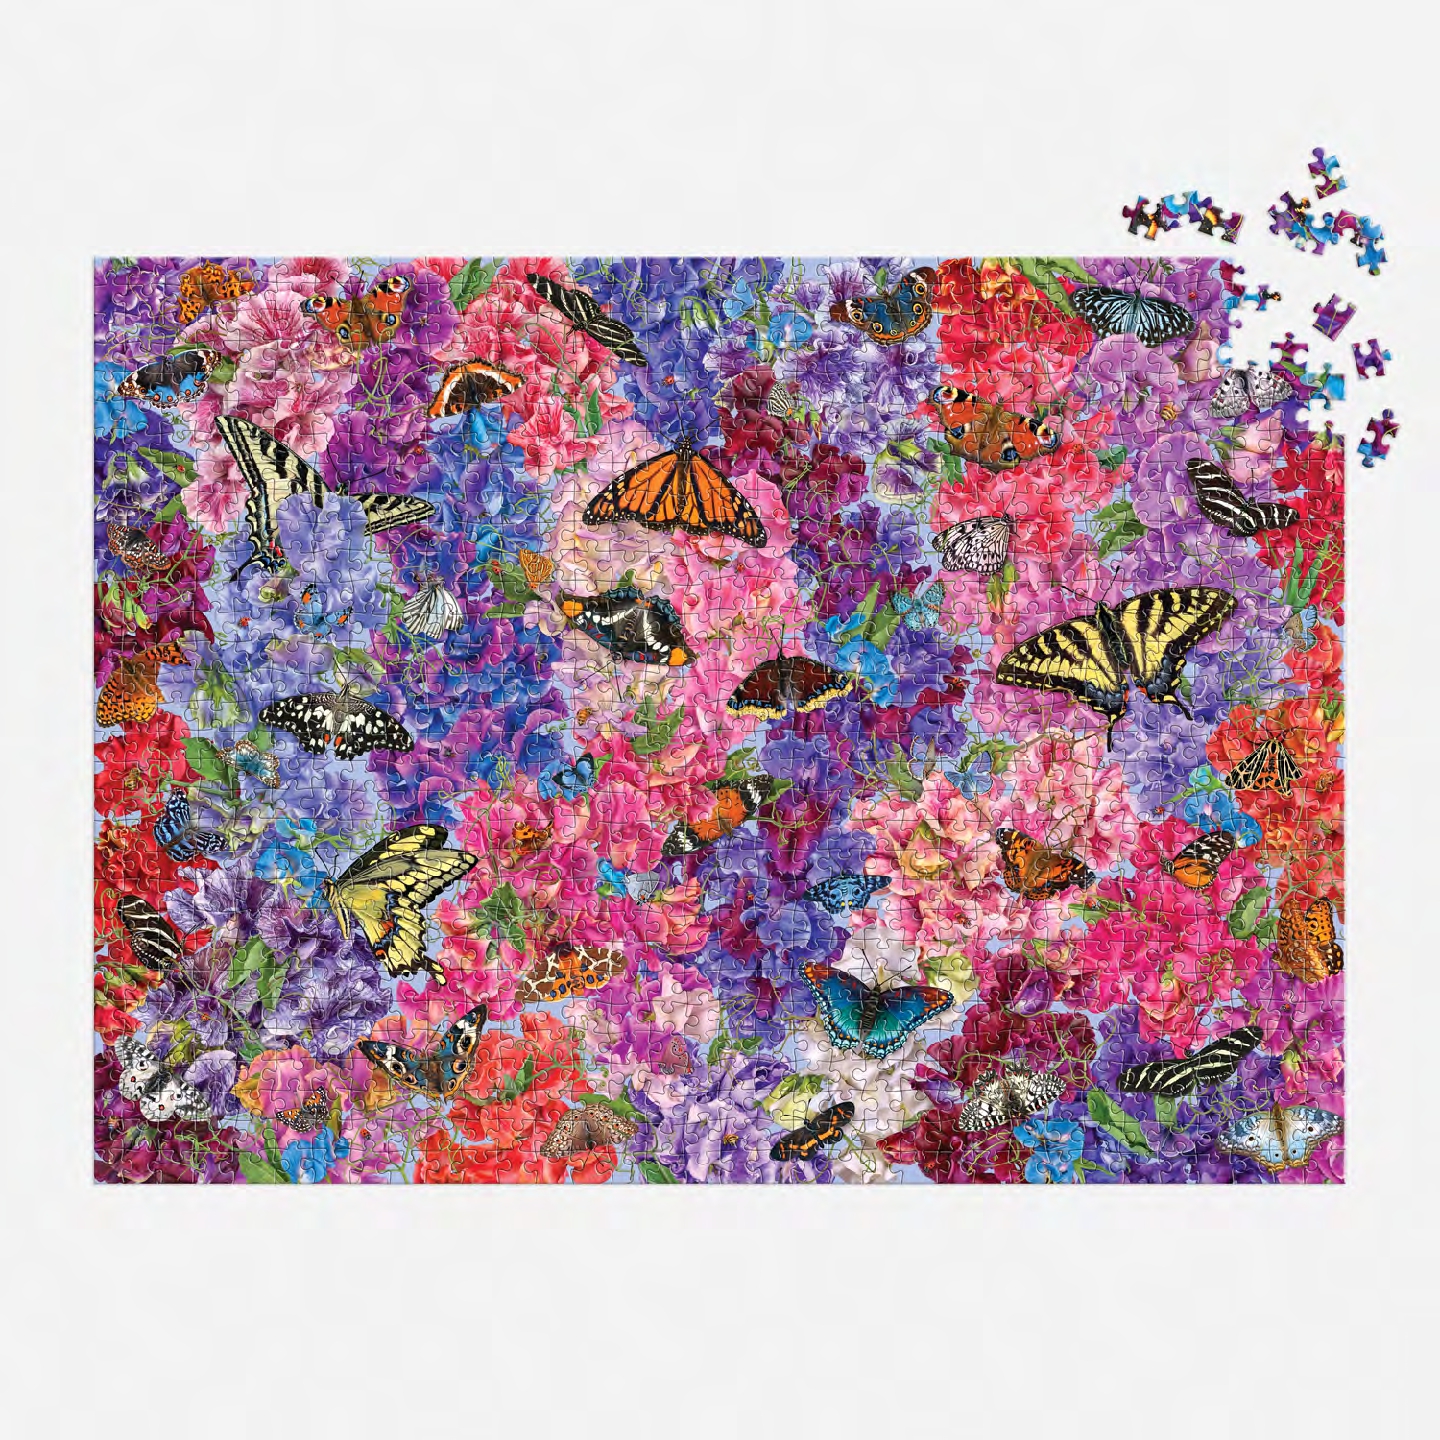 Troy Litten Butterflies In the Sweet Peas 1000 Piece Puzzle